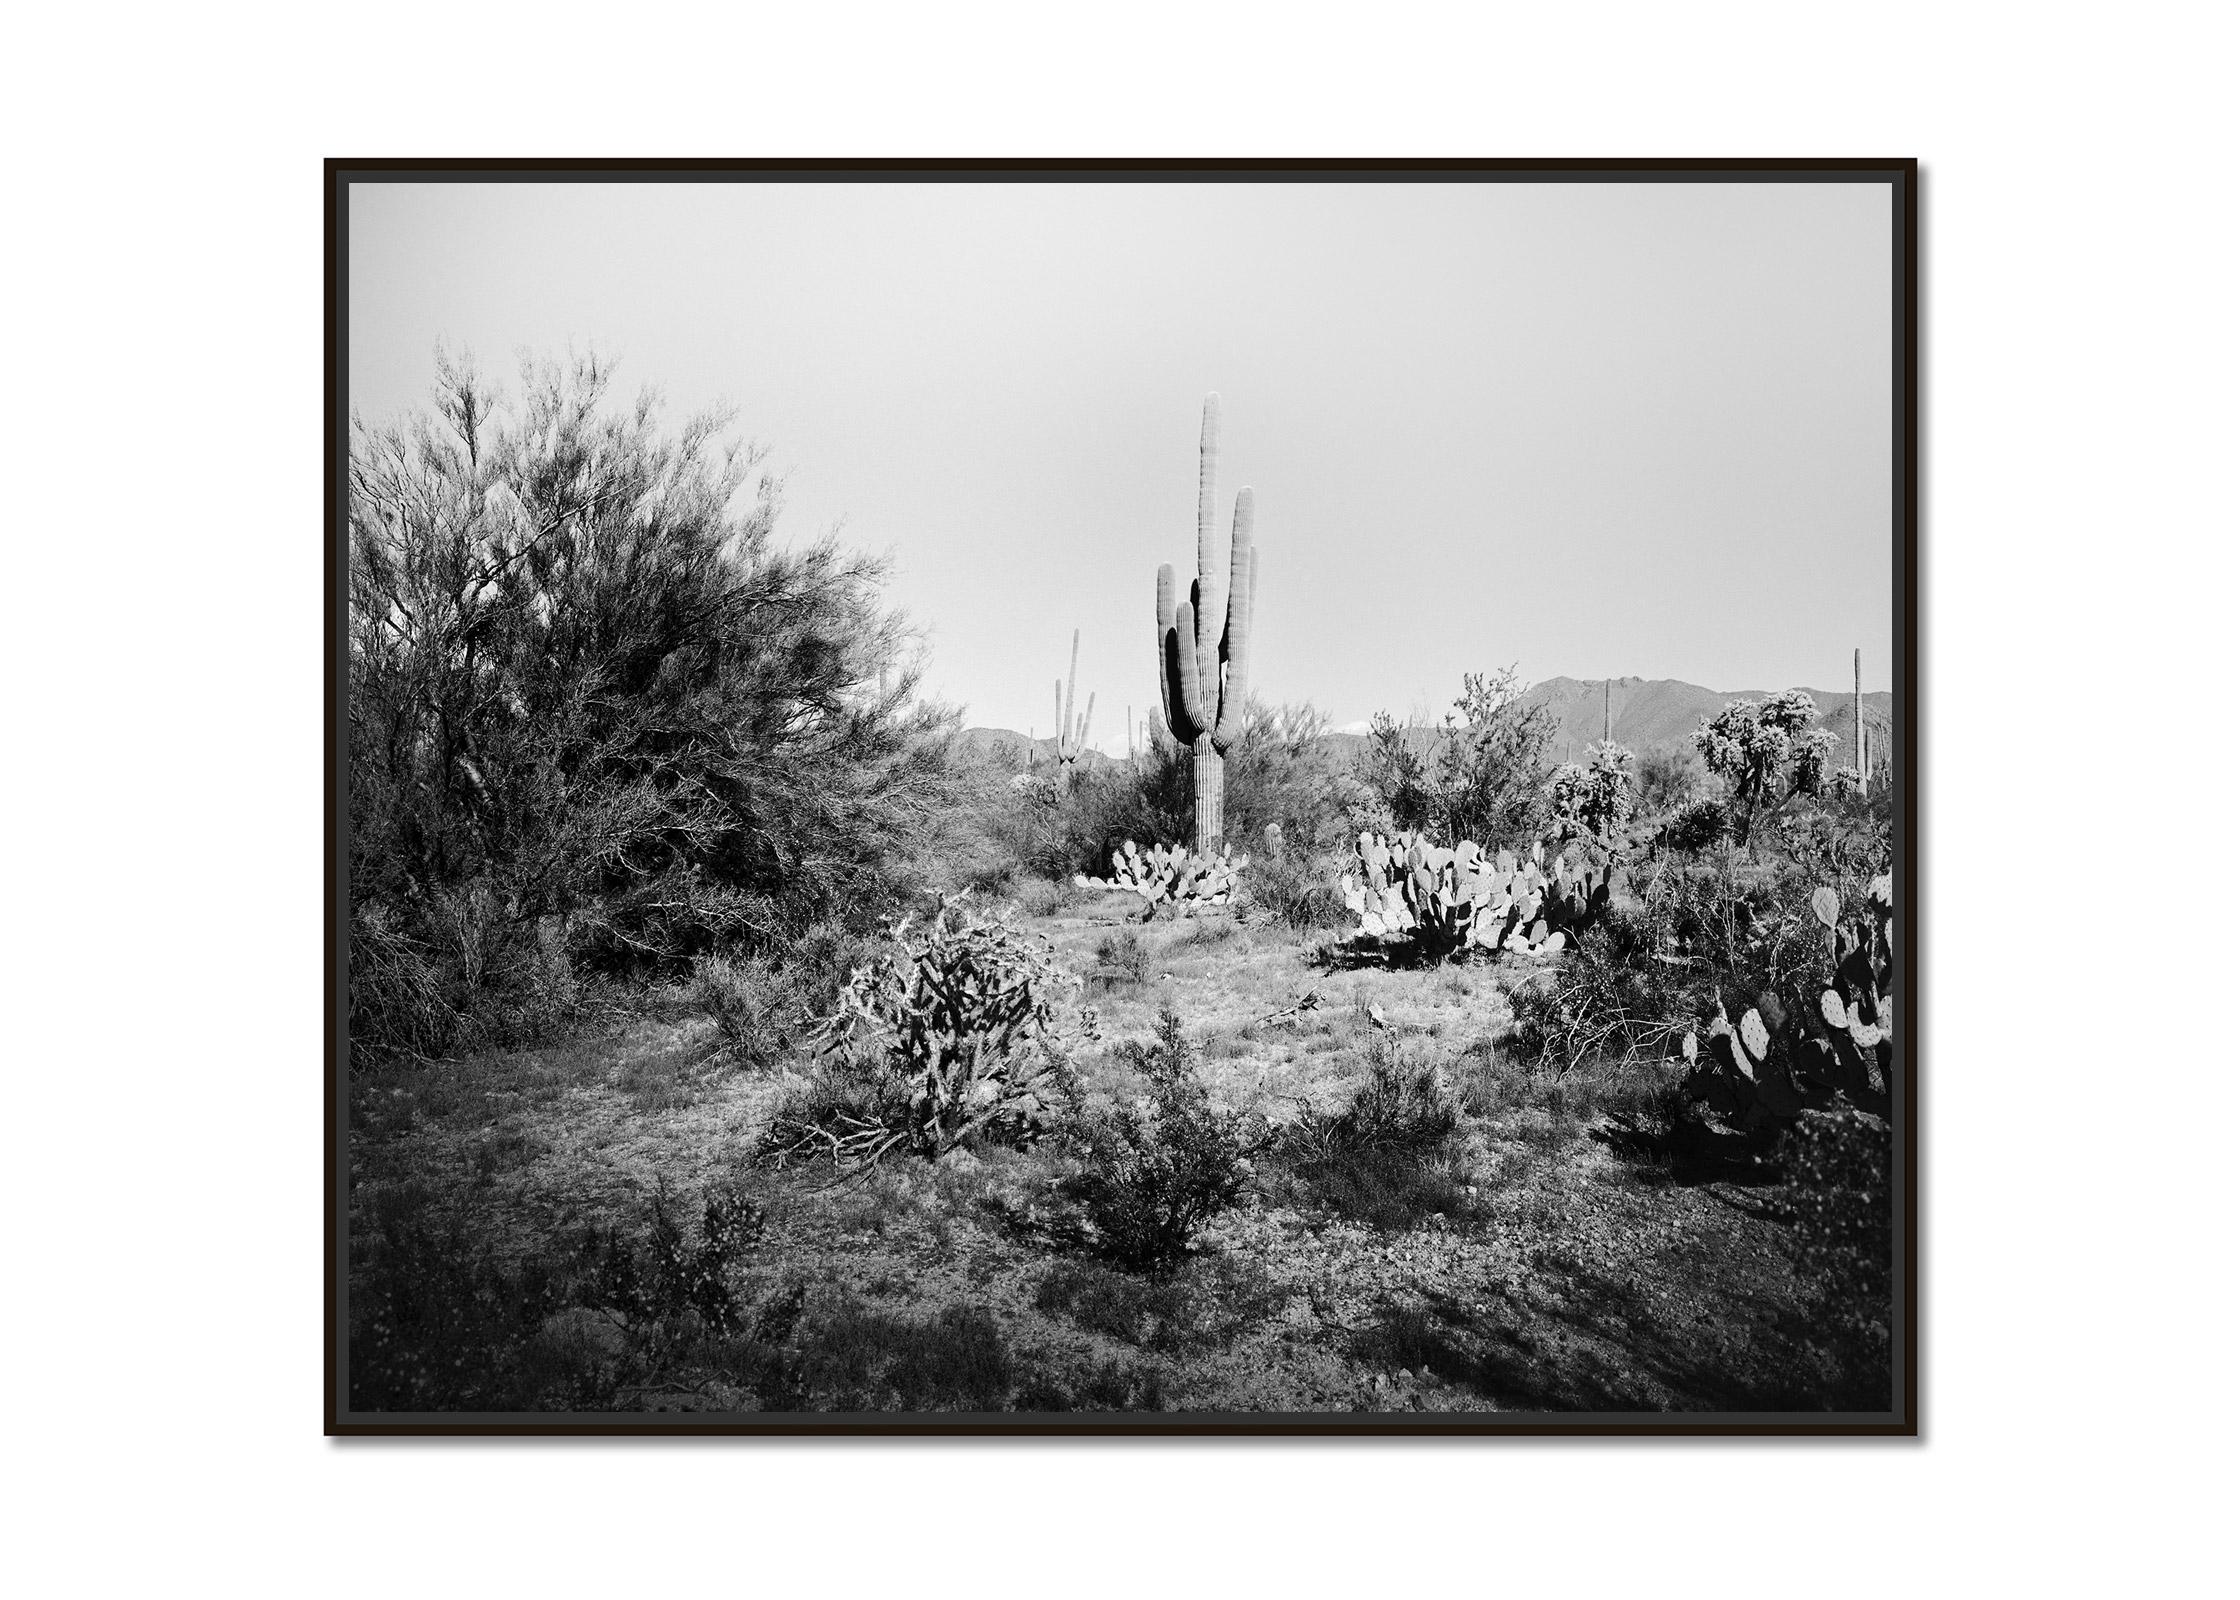 Saguaro Cactus, National Park, Arizona, USA, Schwarz-Weiß-Landschaftsfoto – Photograph von Gerald Berghammer